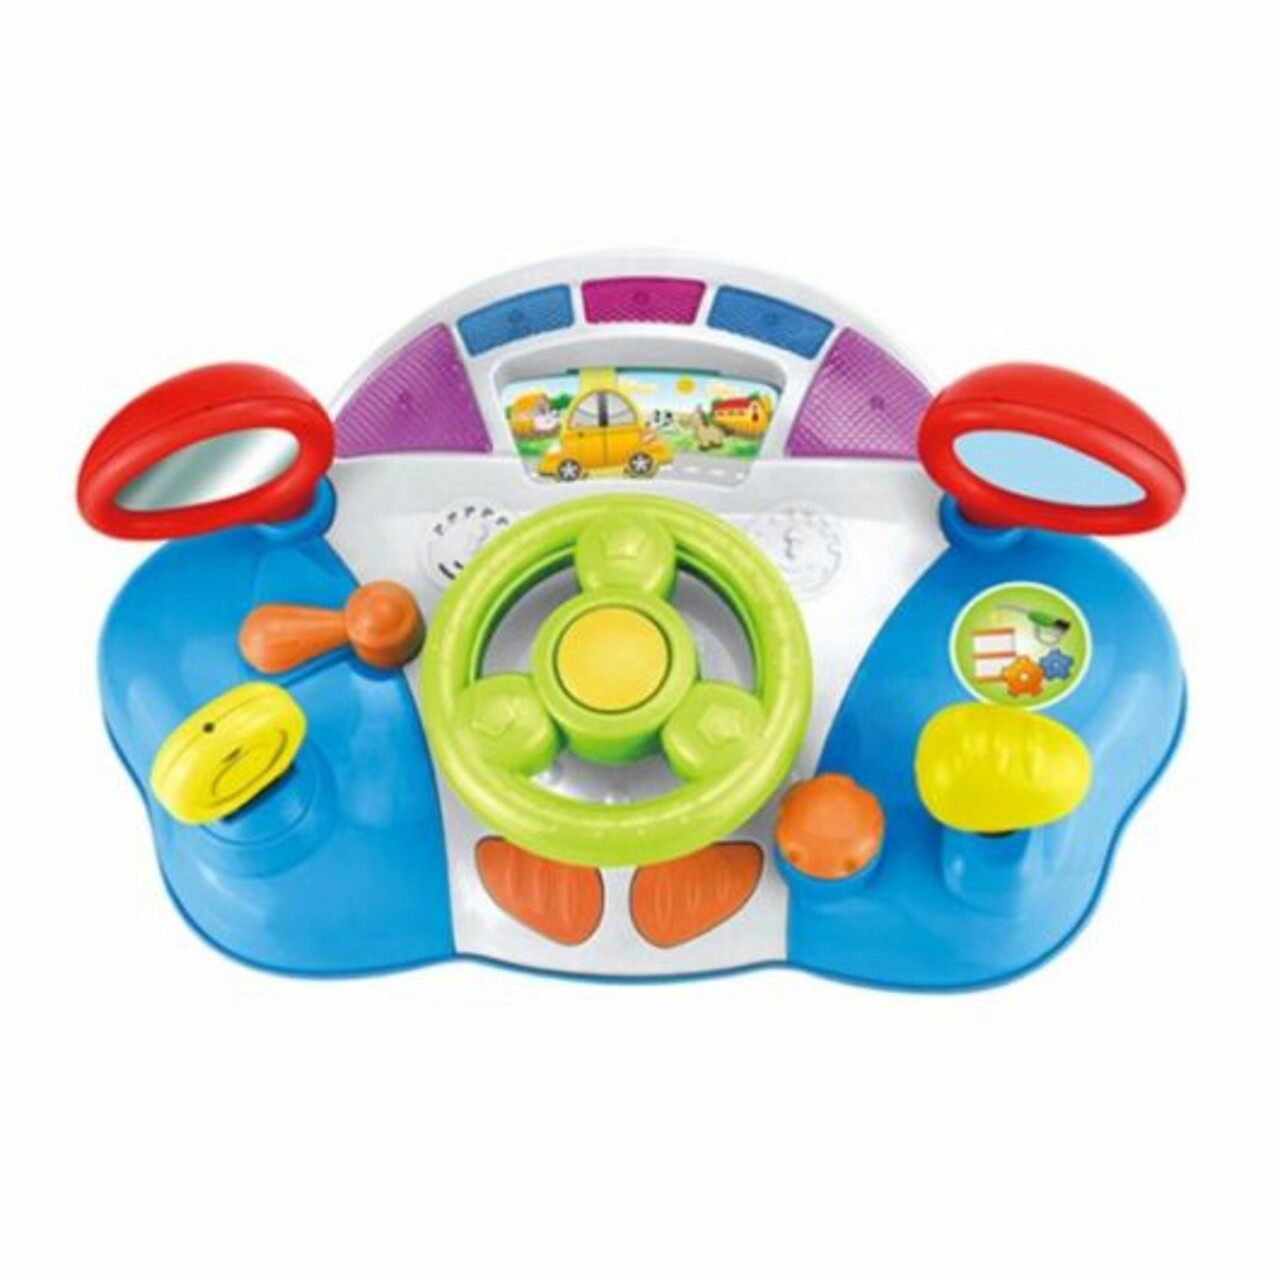 Jucarie navigare, Baby Steering Wheel, HE0507, 18M+, plastic, multicolor